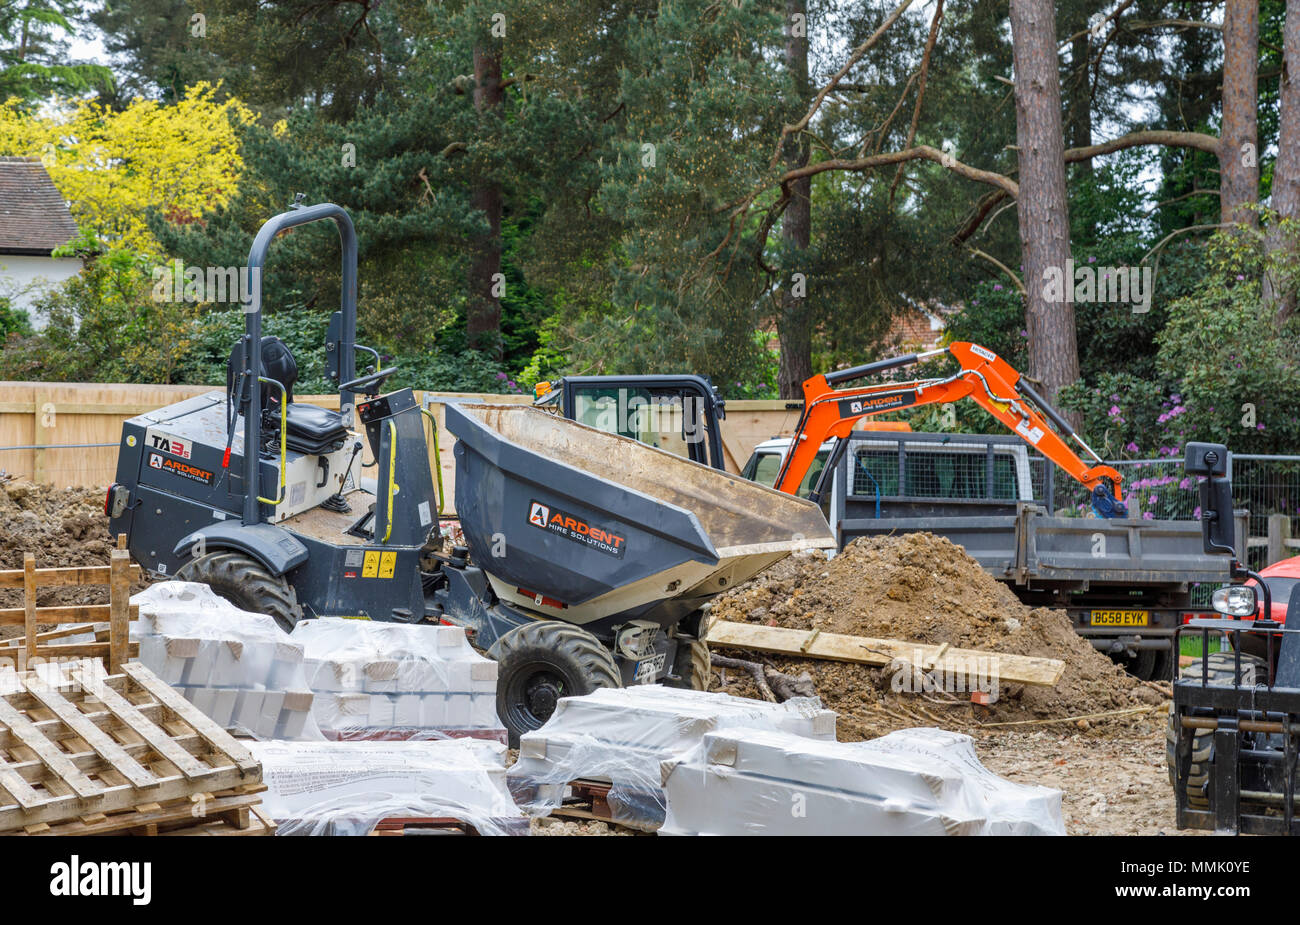 Terex TA3s grigio dumper gommati sul sito di costruzione lavori preparatori per un residenziale giardino suburbano materiale di riempimento o infill, Surrey, Inghilterra del sud-est Foto Stock